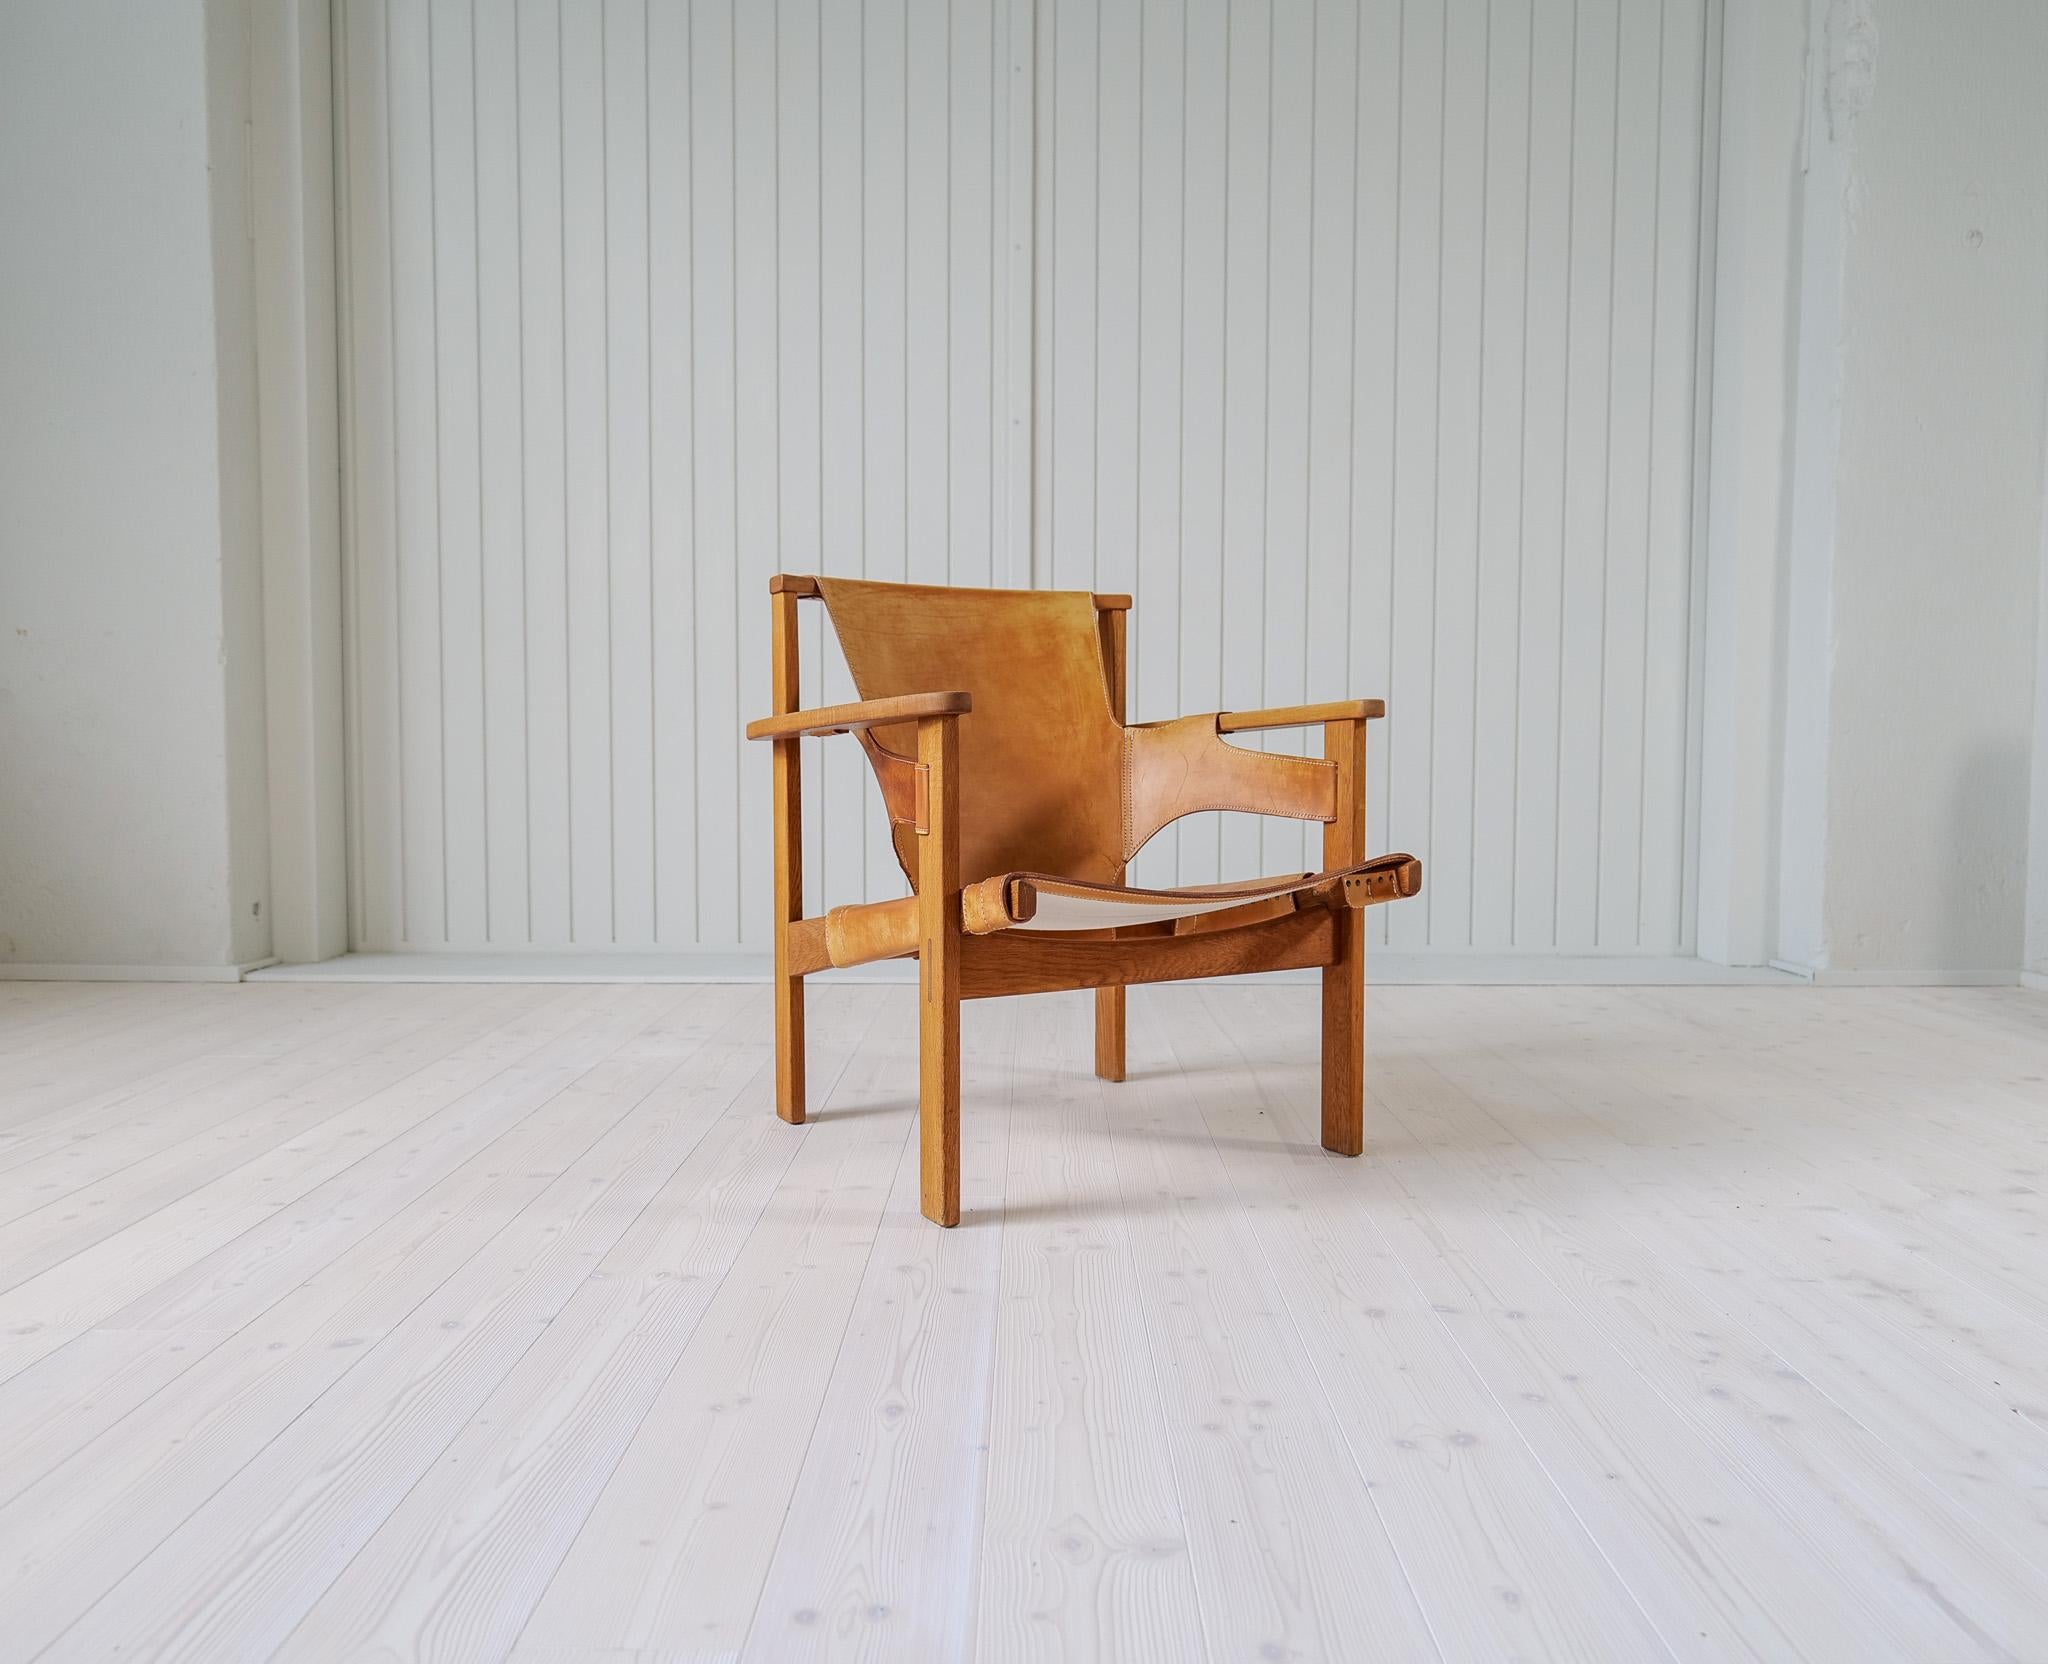 Dieser schöne Sessel wurde 1957 von Carl Axel Acking entworfen. Als der Stuhl zum ersten Mal auf der Triennale in Mailand ausgestellt wurde, wurde er von NK (Nordiska Kompaniet) hergestellt und erhielt den Namen 